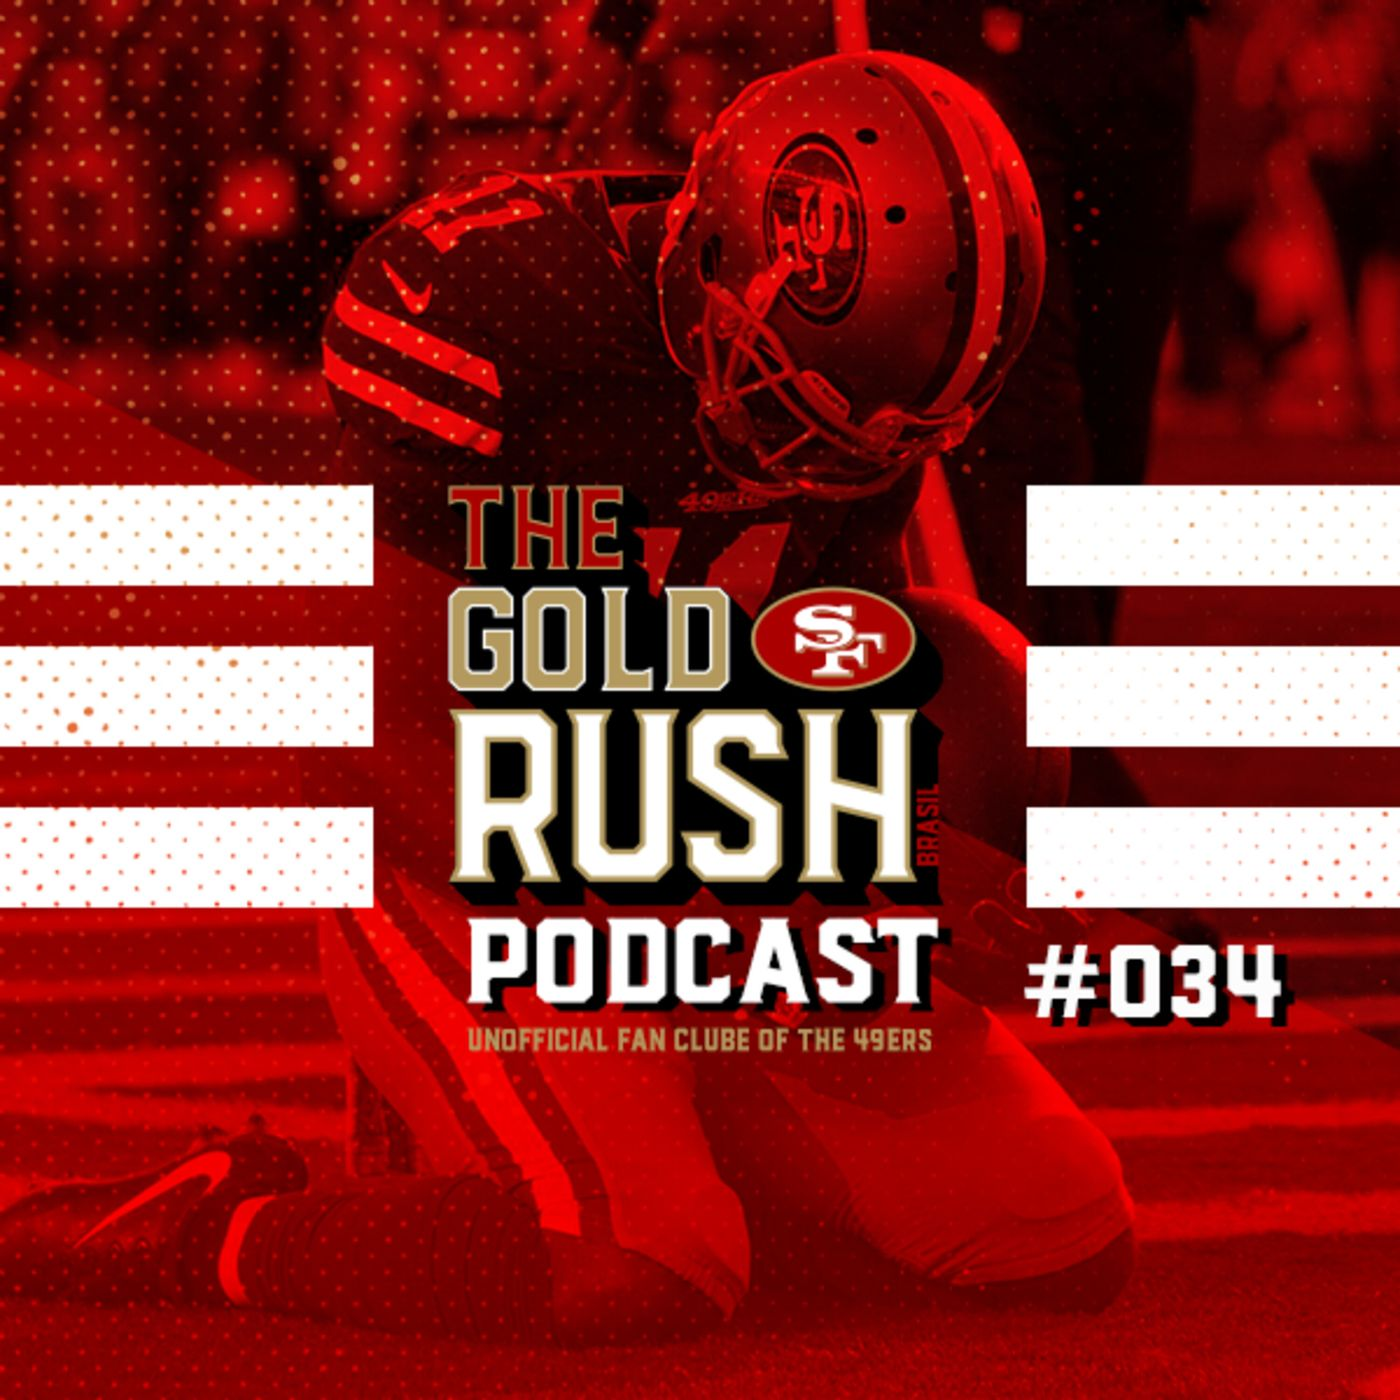 The Gold Rush Brasil Podcast 034 – Semana 10 Giants vs 49ers